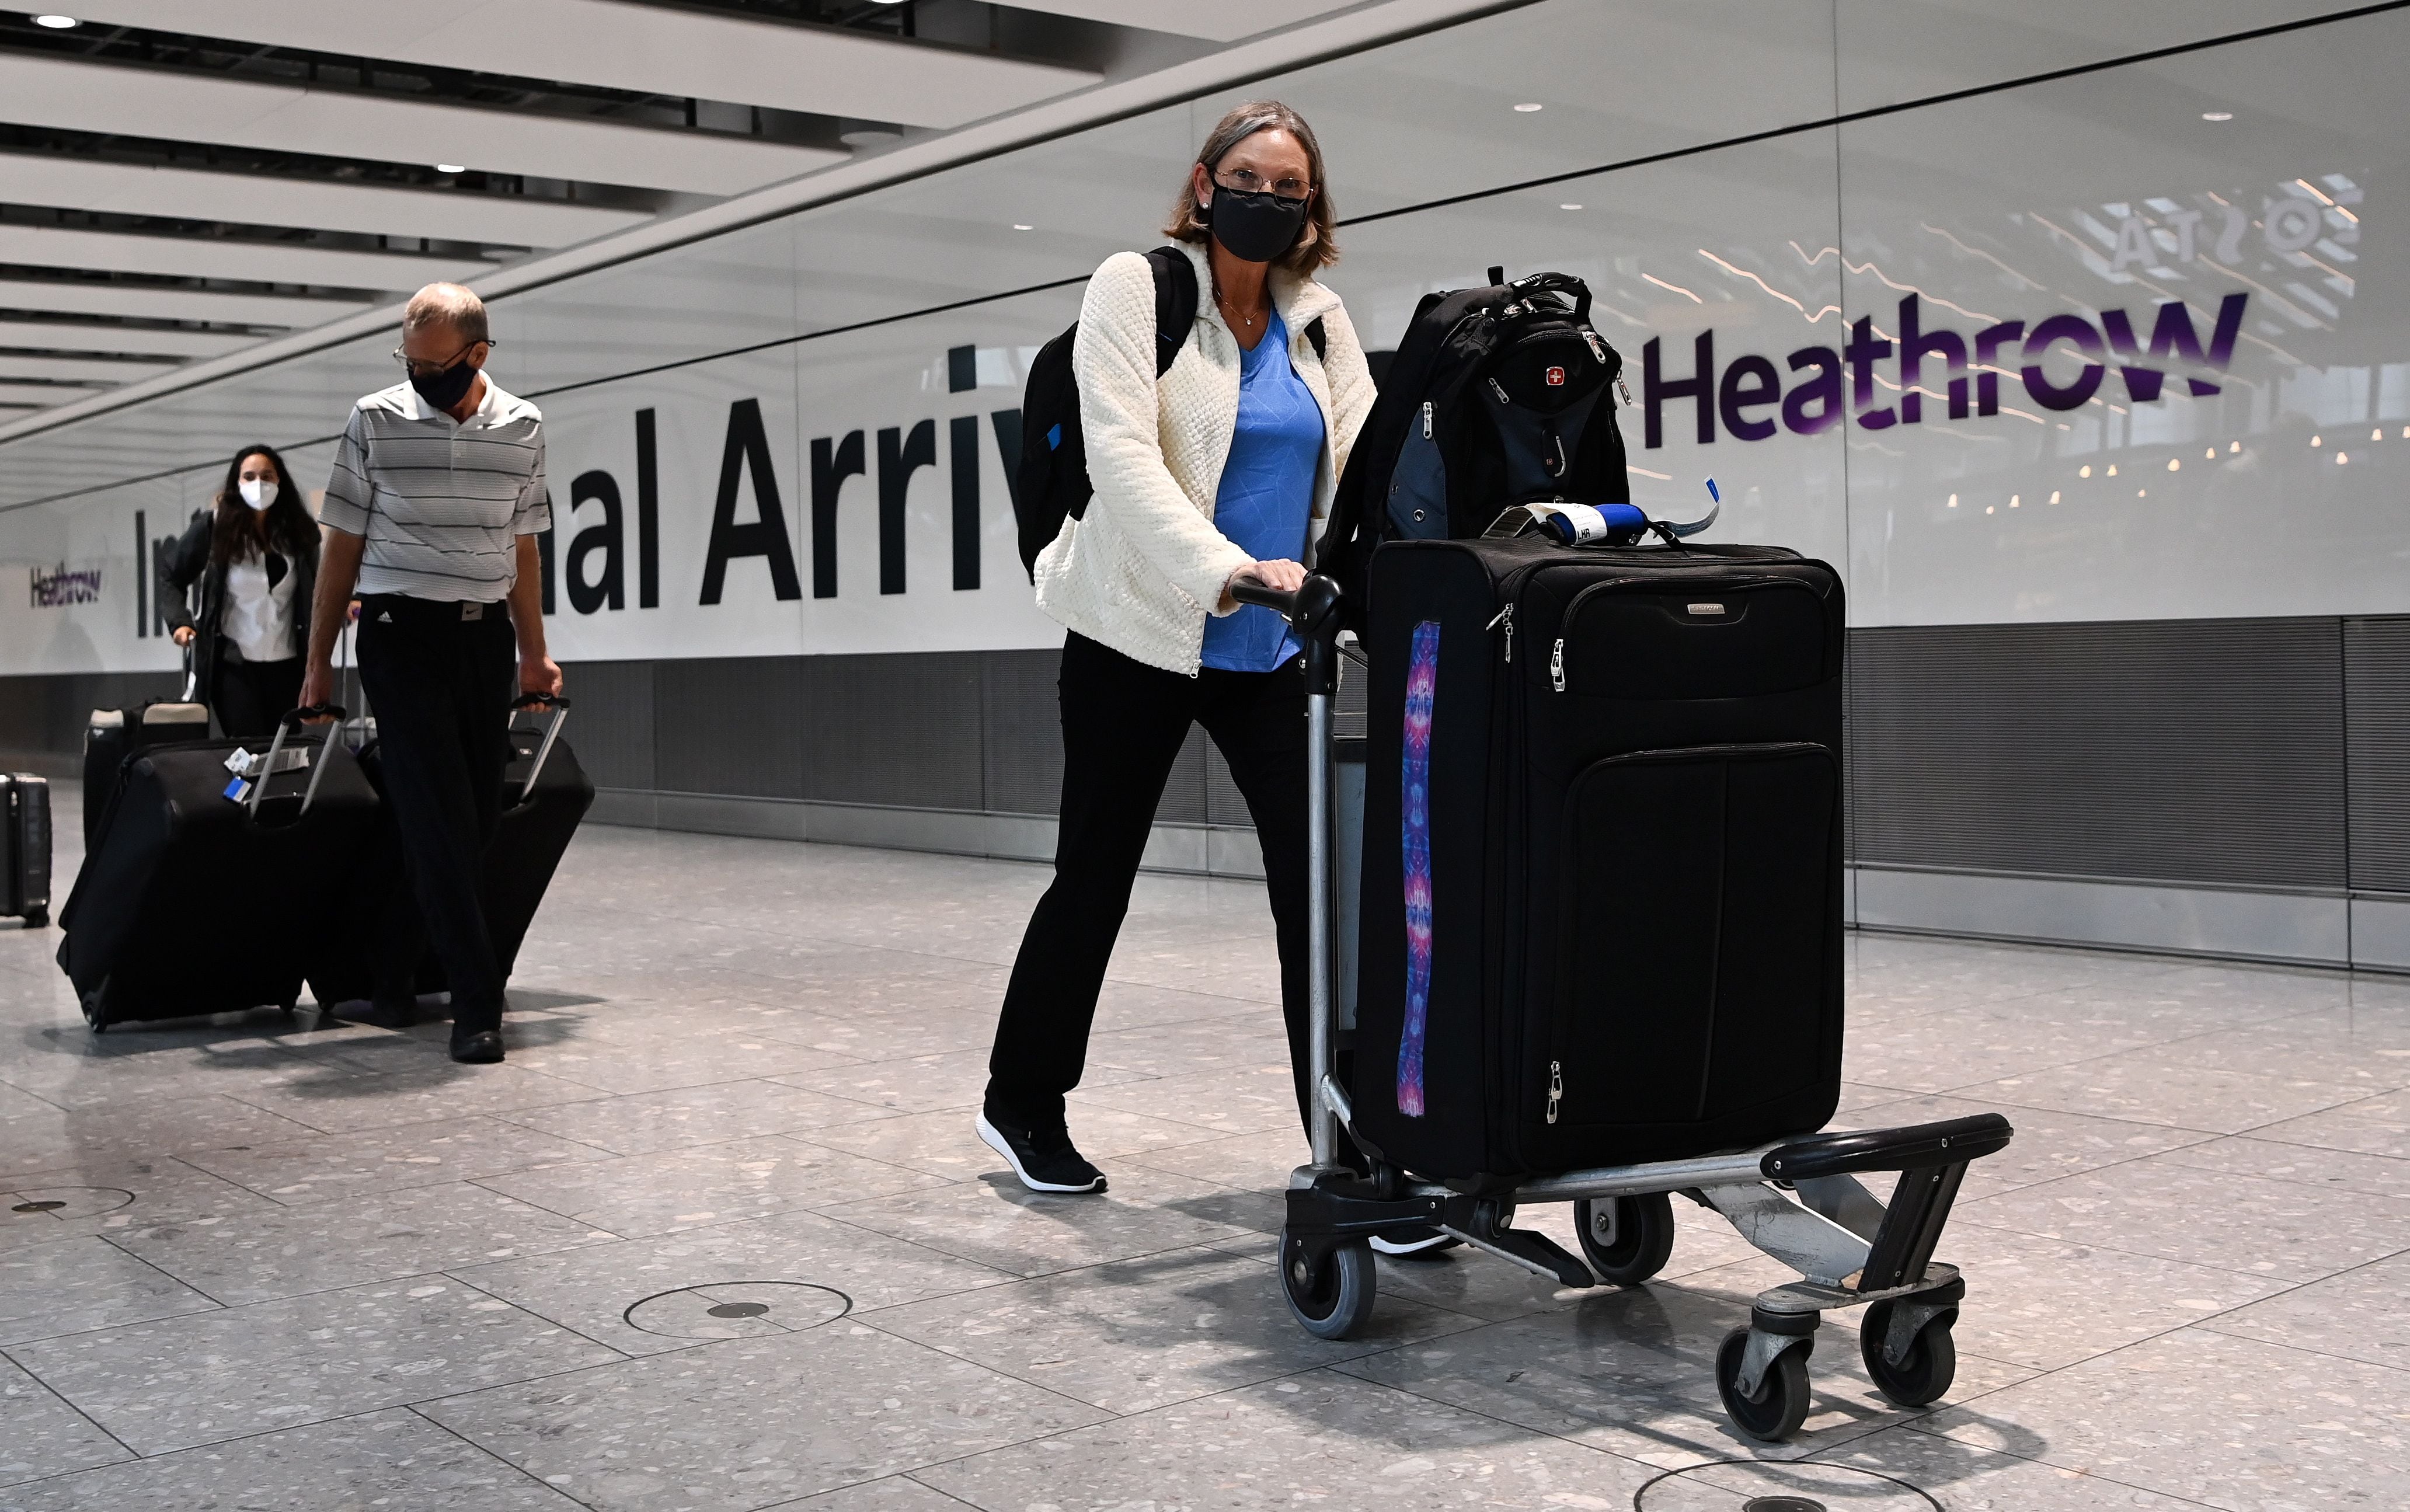 Viajeros en el aeropuerto de Heathrow, en una imagen de archivo. EFE/EPA/ANDY RAIN